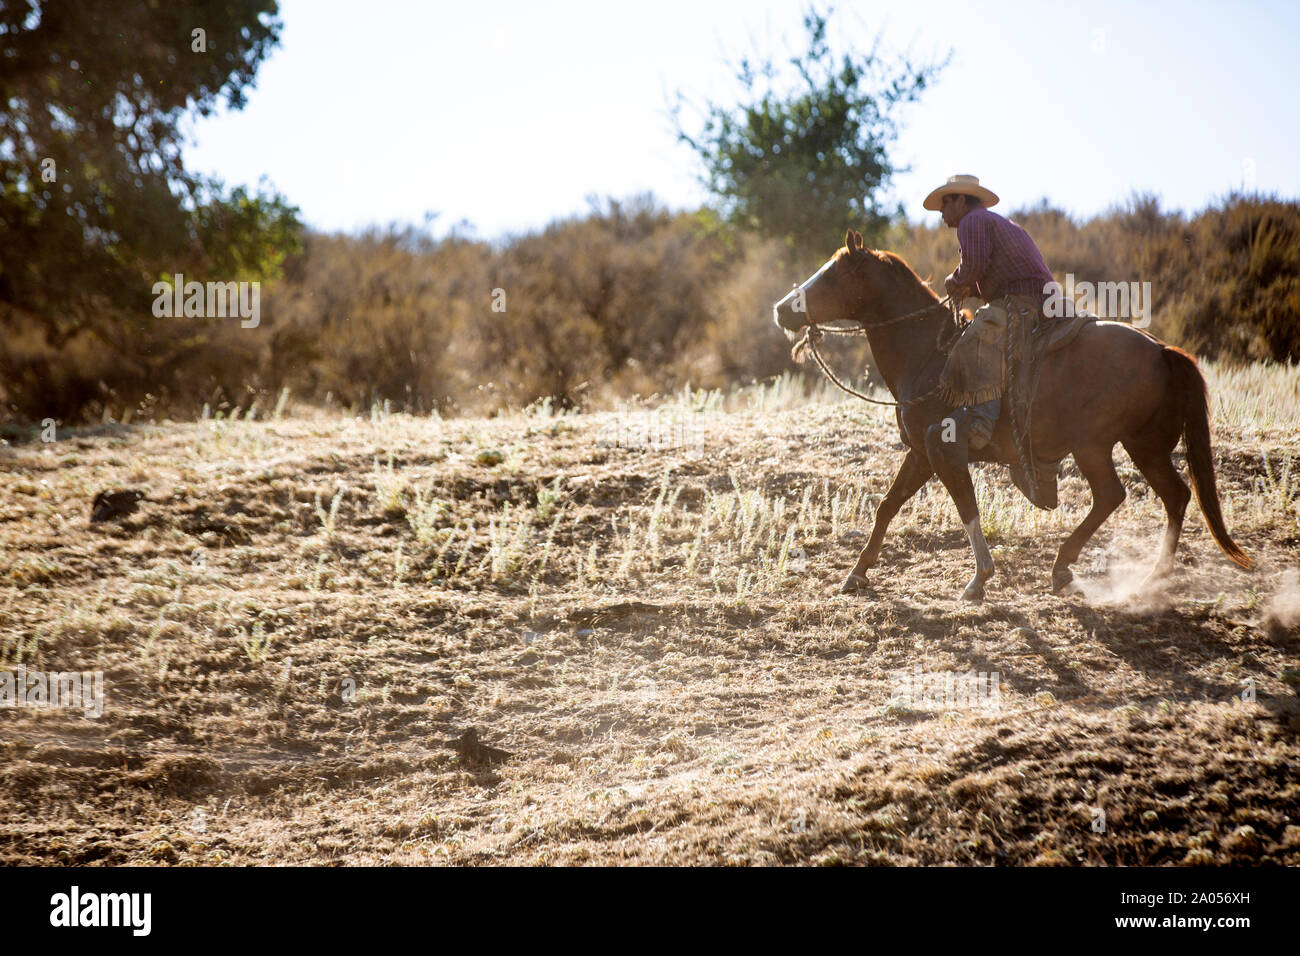 Ein Cowboy auf einem Pferd treibt gemeinsam mit seinem Hirtenhund eine Herde Rinder von einer Weide zurück auf eine Farm. Der Cowboy trägt dabei ein k Stock Photo